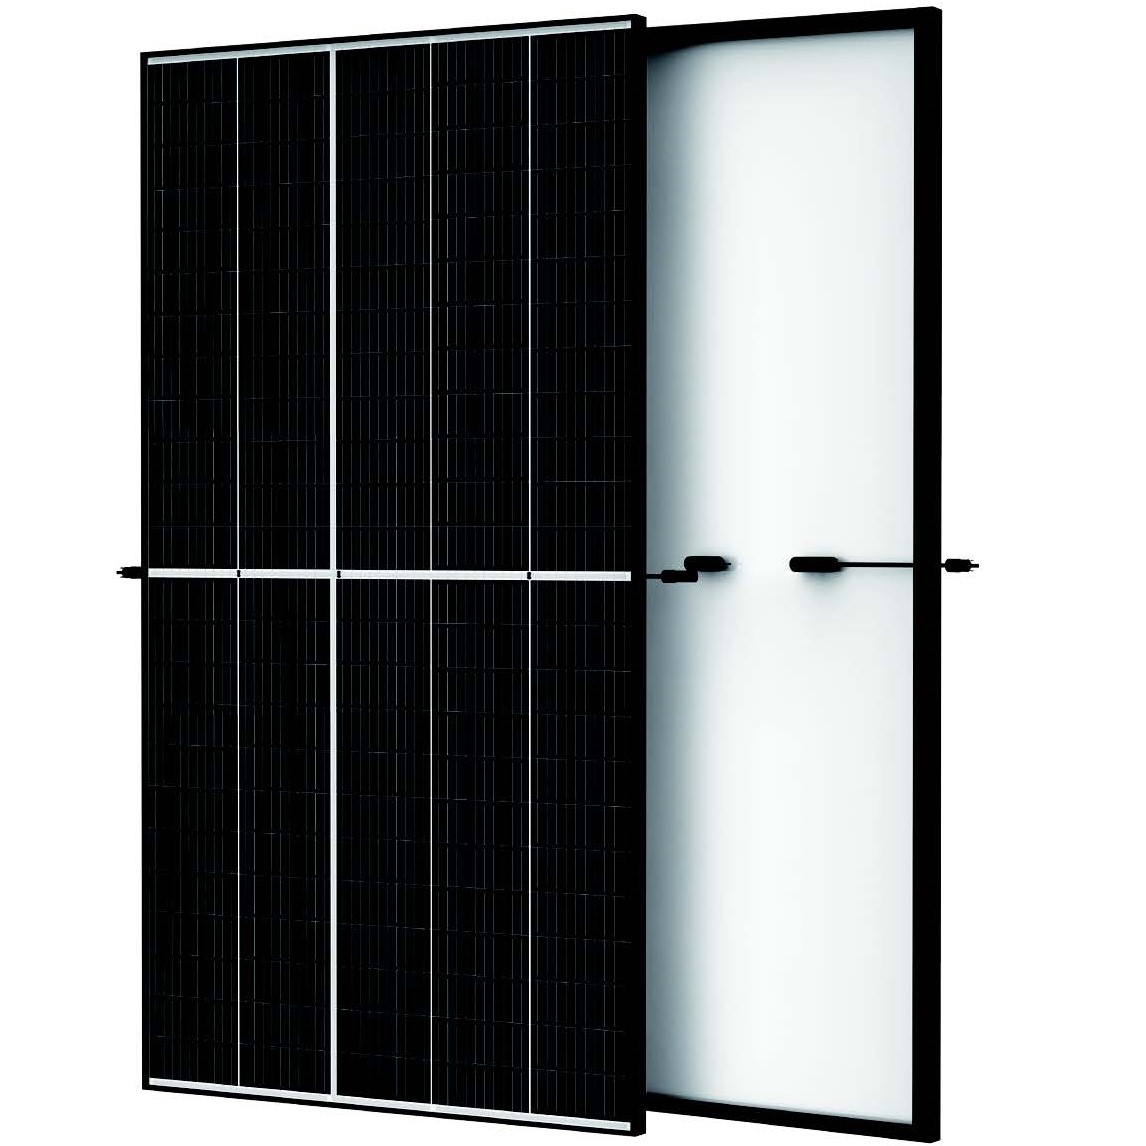 Monokrystalický fotovoltaický panel s černým rámem, 1754 x 1096 x 30 mm, 21 kg